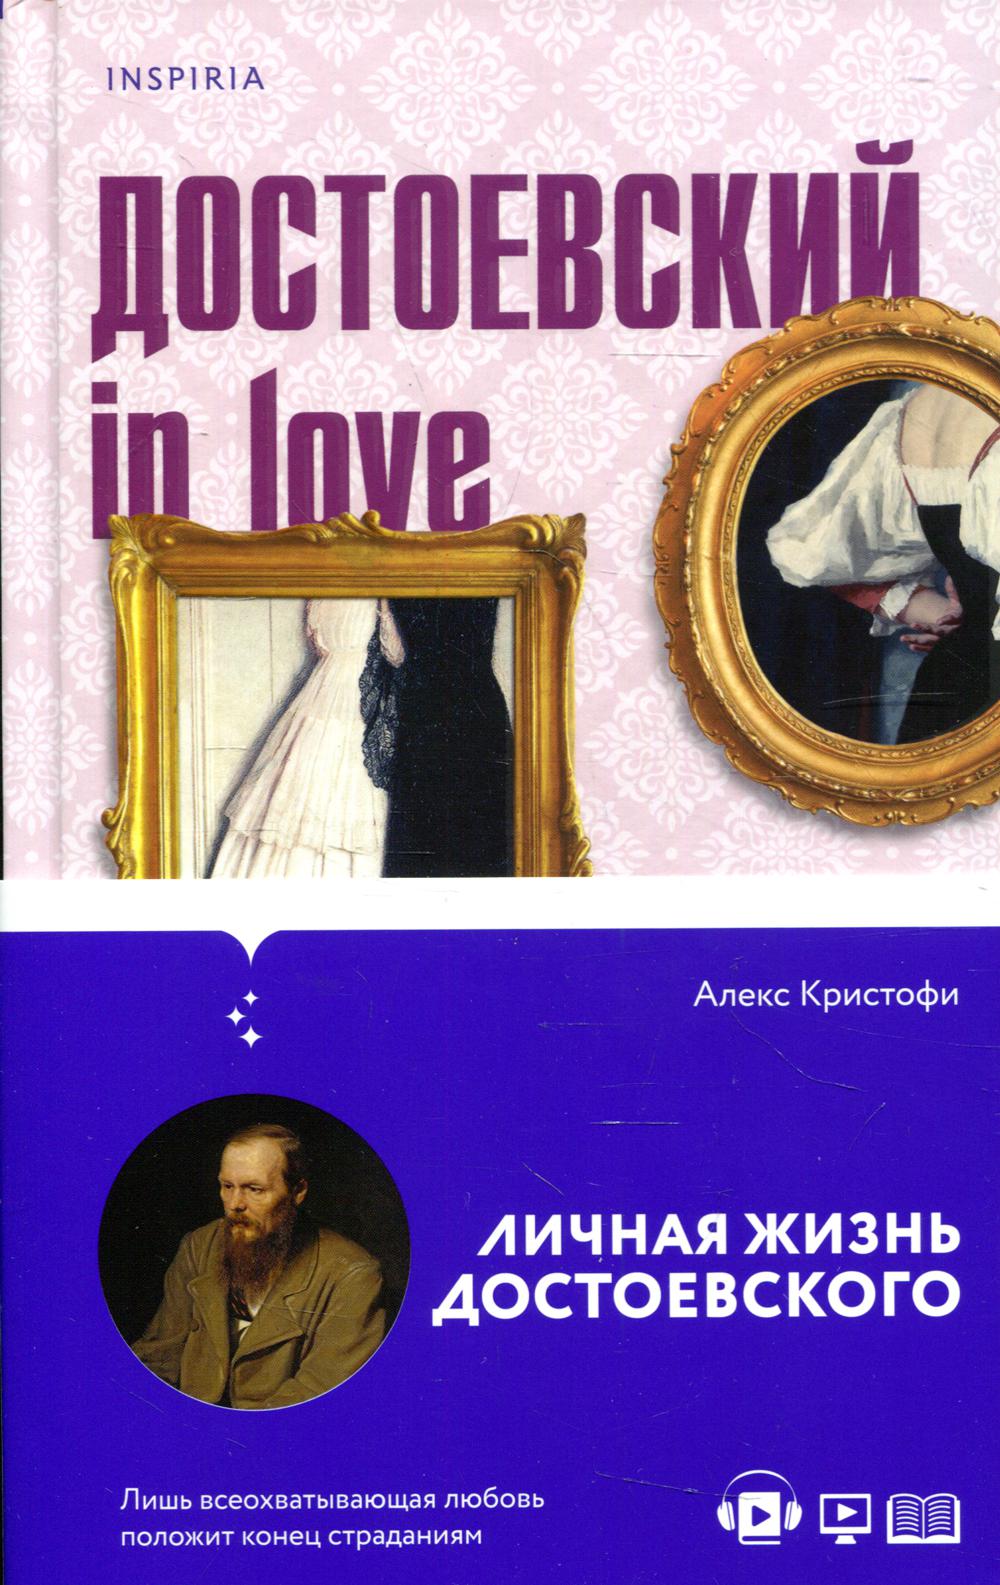 Достоевский in love: личная жизнь